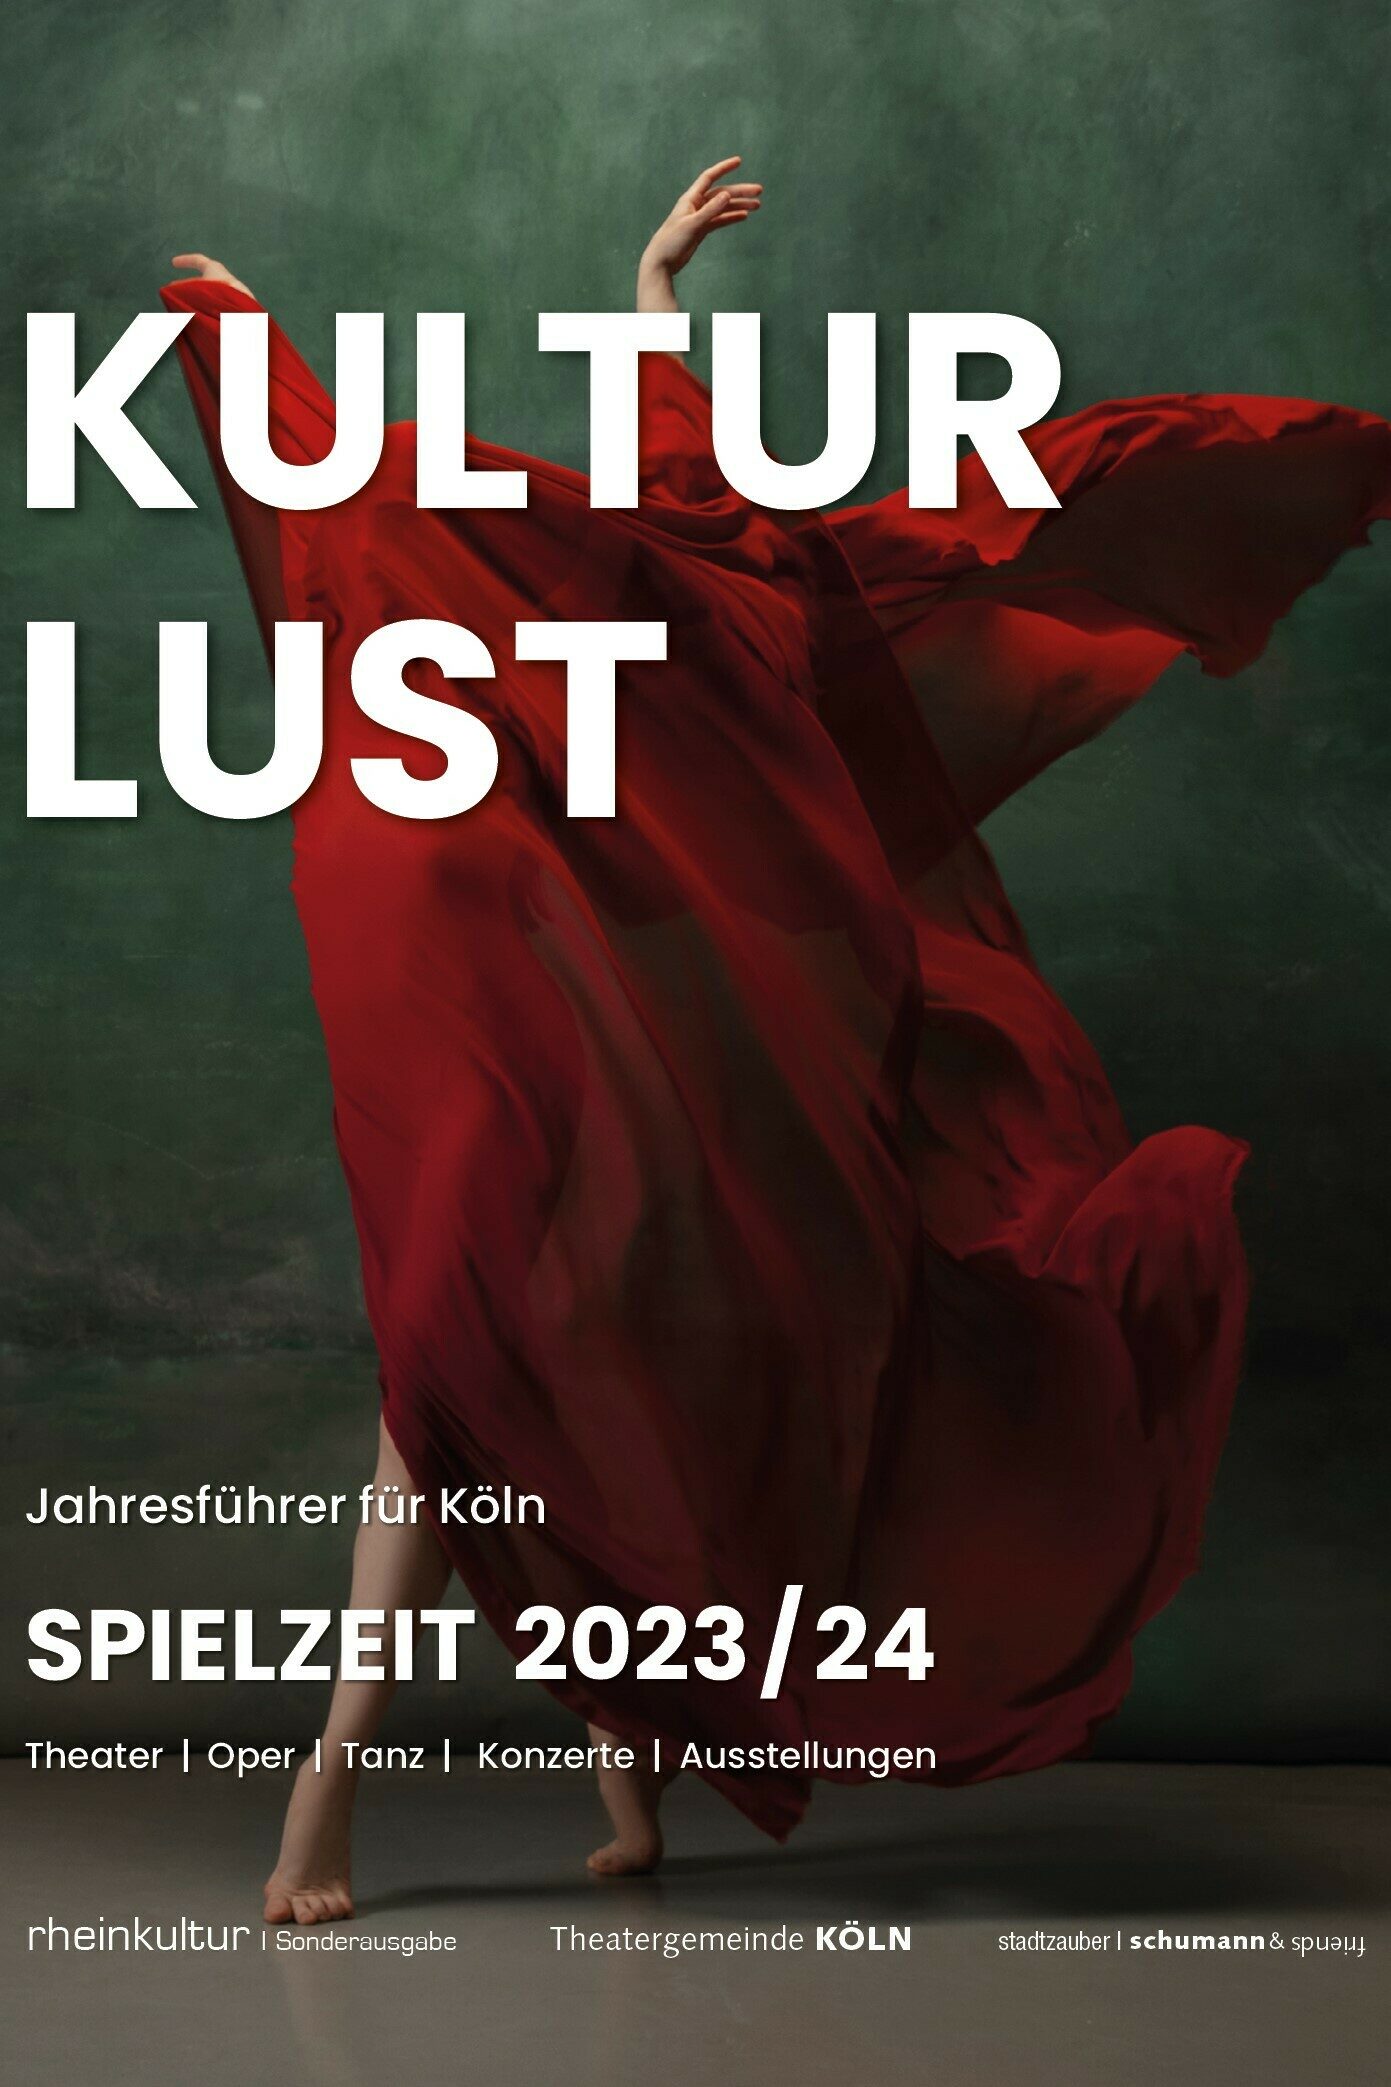 KulturLust 2023 2024, Jahresführer, Theater, Oper, Tanz, Konzerte, Ausstellungen